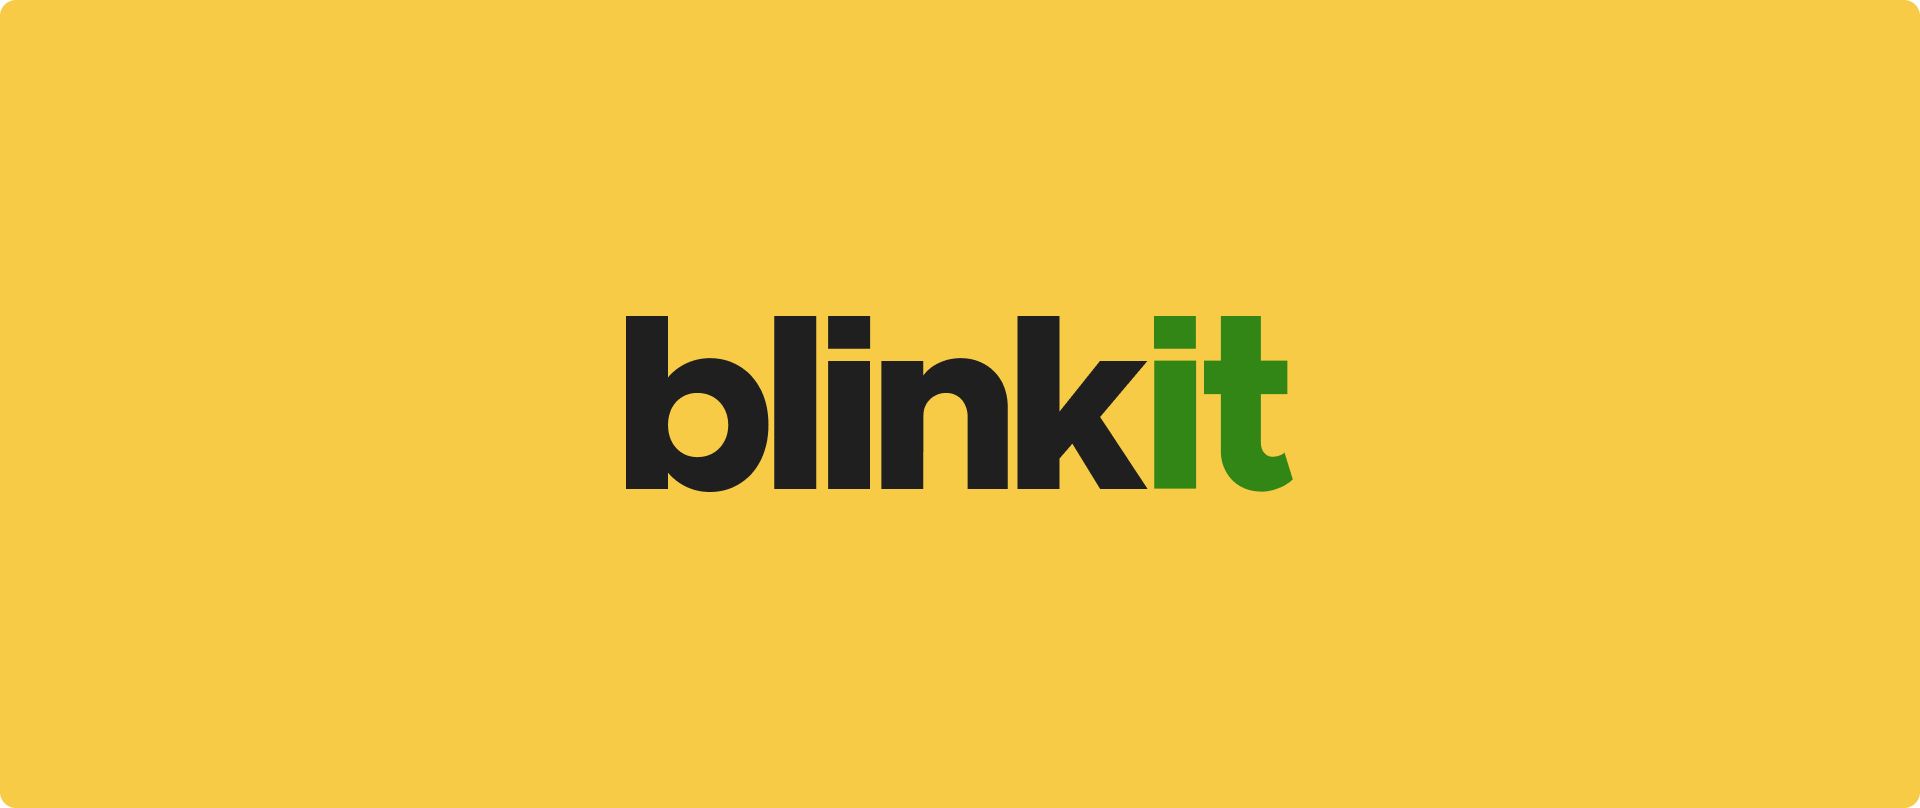 هل بلينكيت لا يعمل؟ استكشف نصائح استكشاف الأخطاء وإصلاحها وابحث عن أفضل بدائل Blinkit للتسوق السلس للبقالة. العودة إلى المسار الصحيح اليوم!